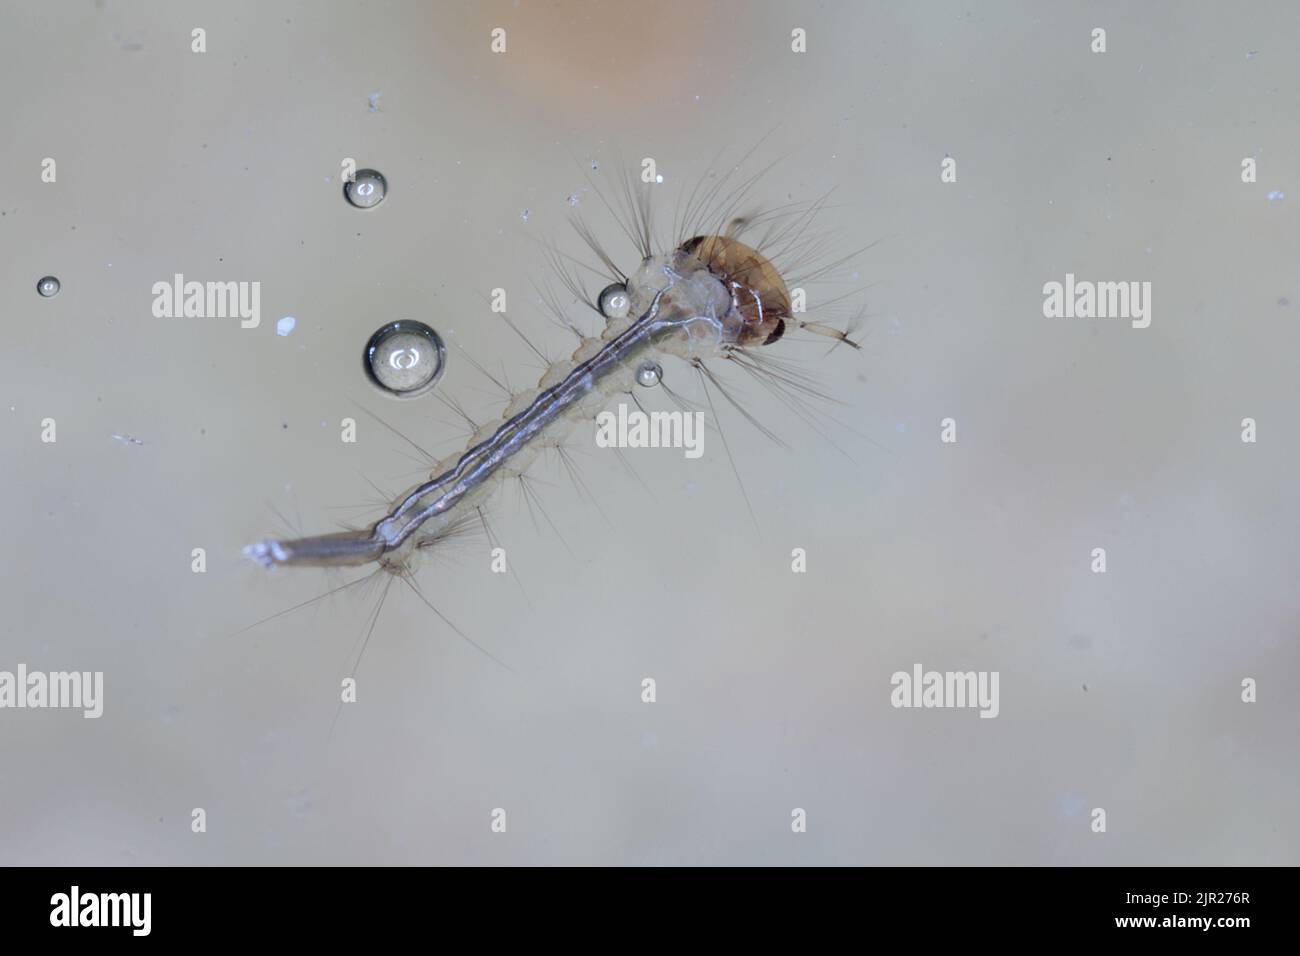 Gros plan de la larve de Mosquito sous l'eau. Banque D'Images